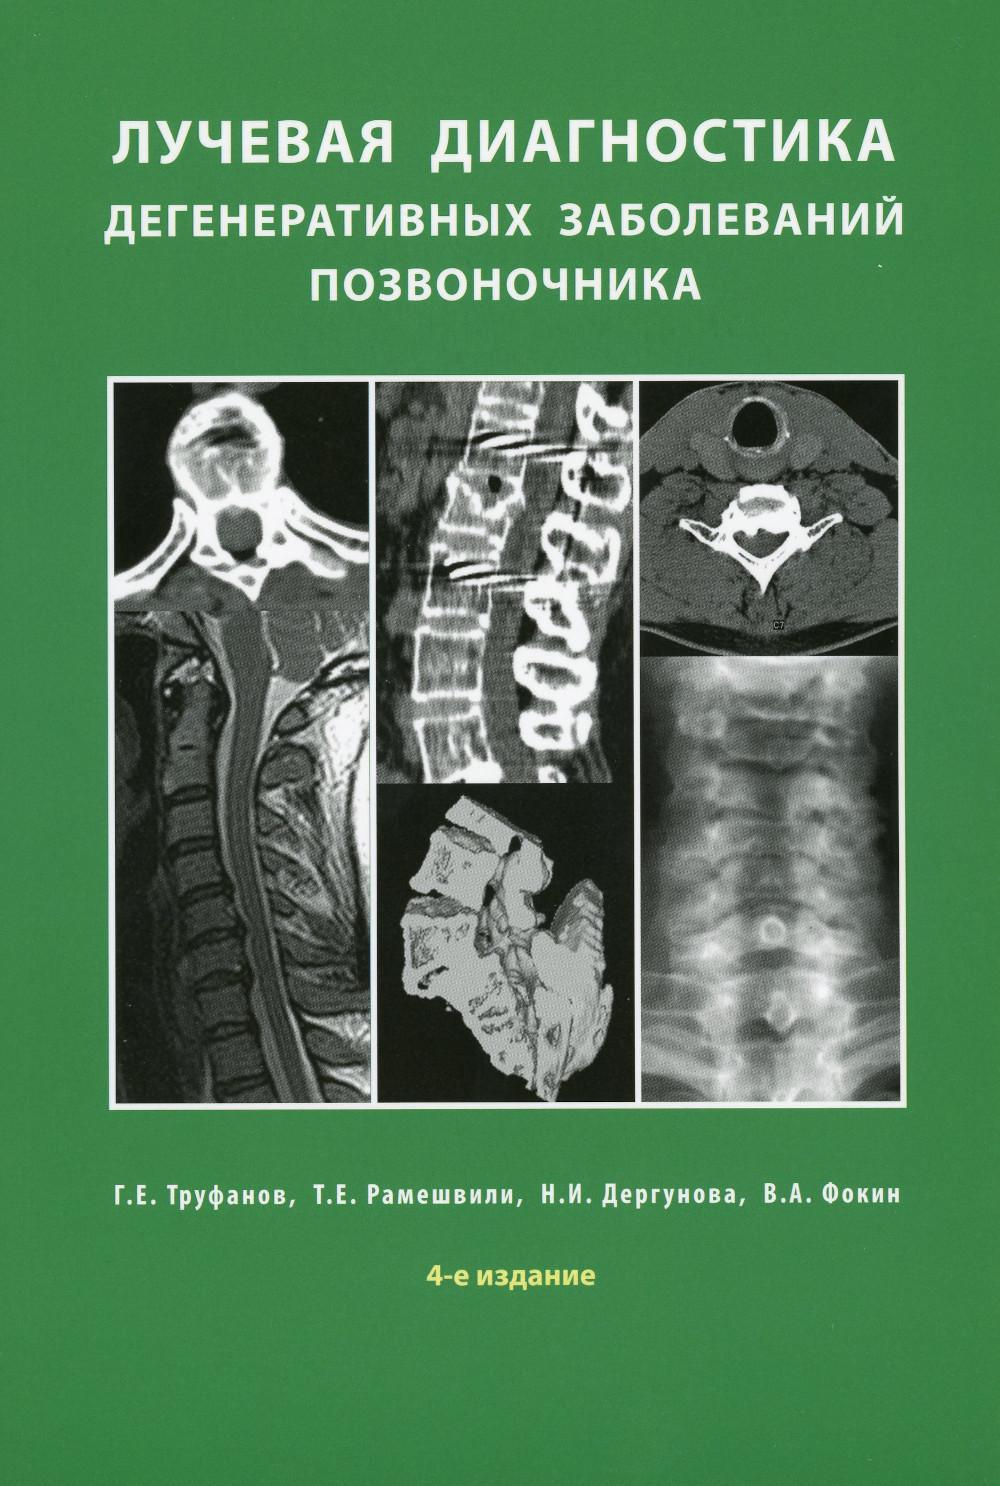 Лучевая диагностика дегенеративных заболеваний позвоночника. 4-е изд